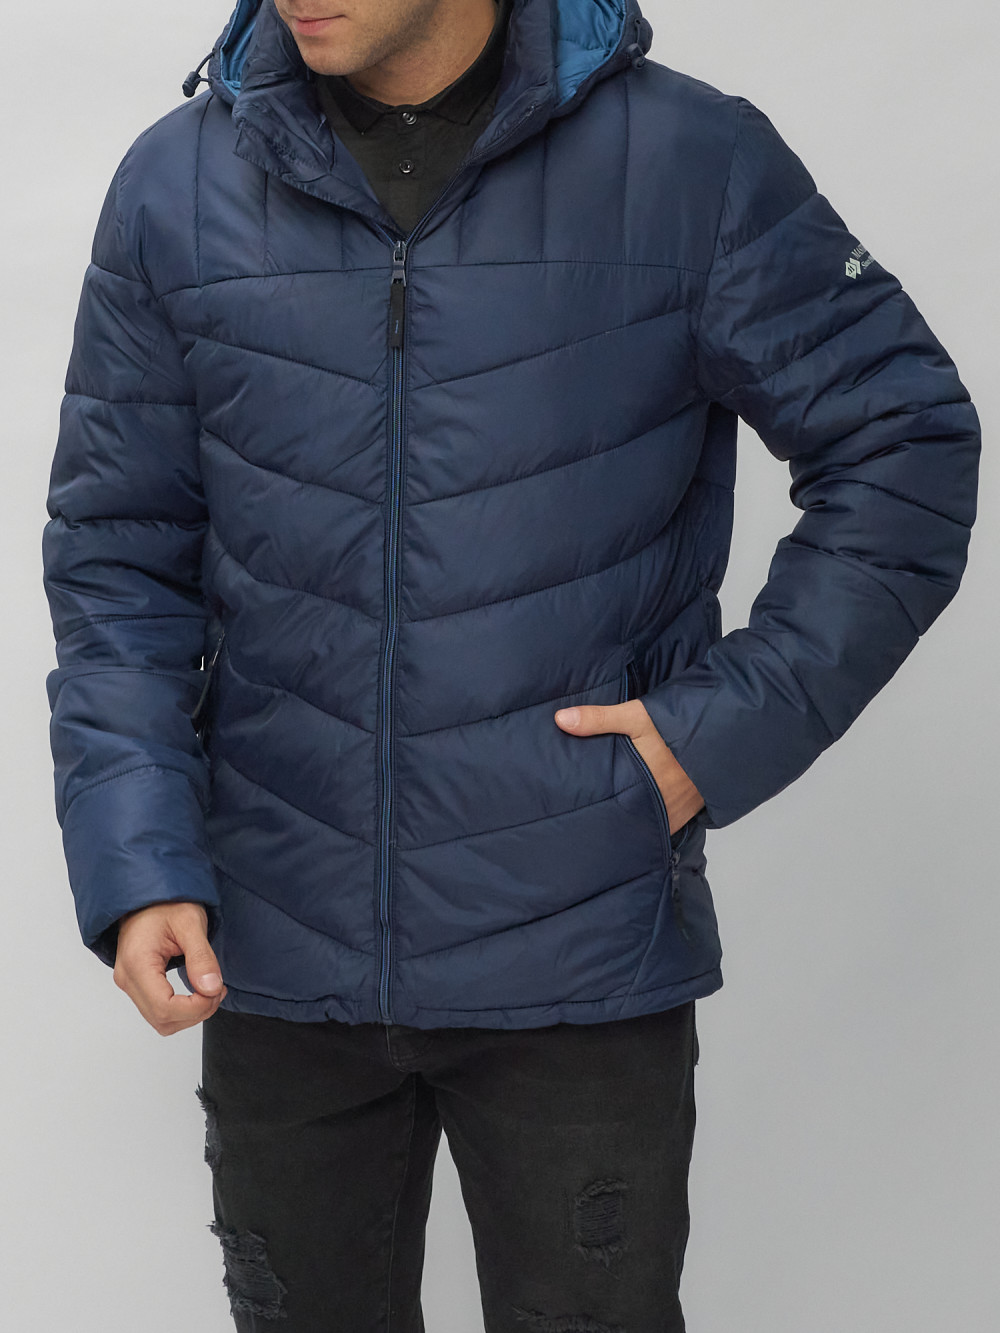 Купить куртку мужскую спортивную весеннюю оптом от производителя недорого в Москве 62177TS 1